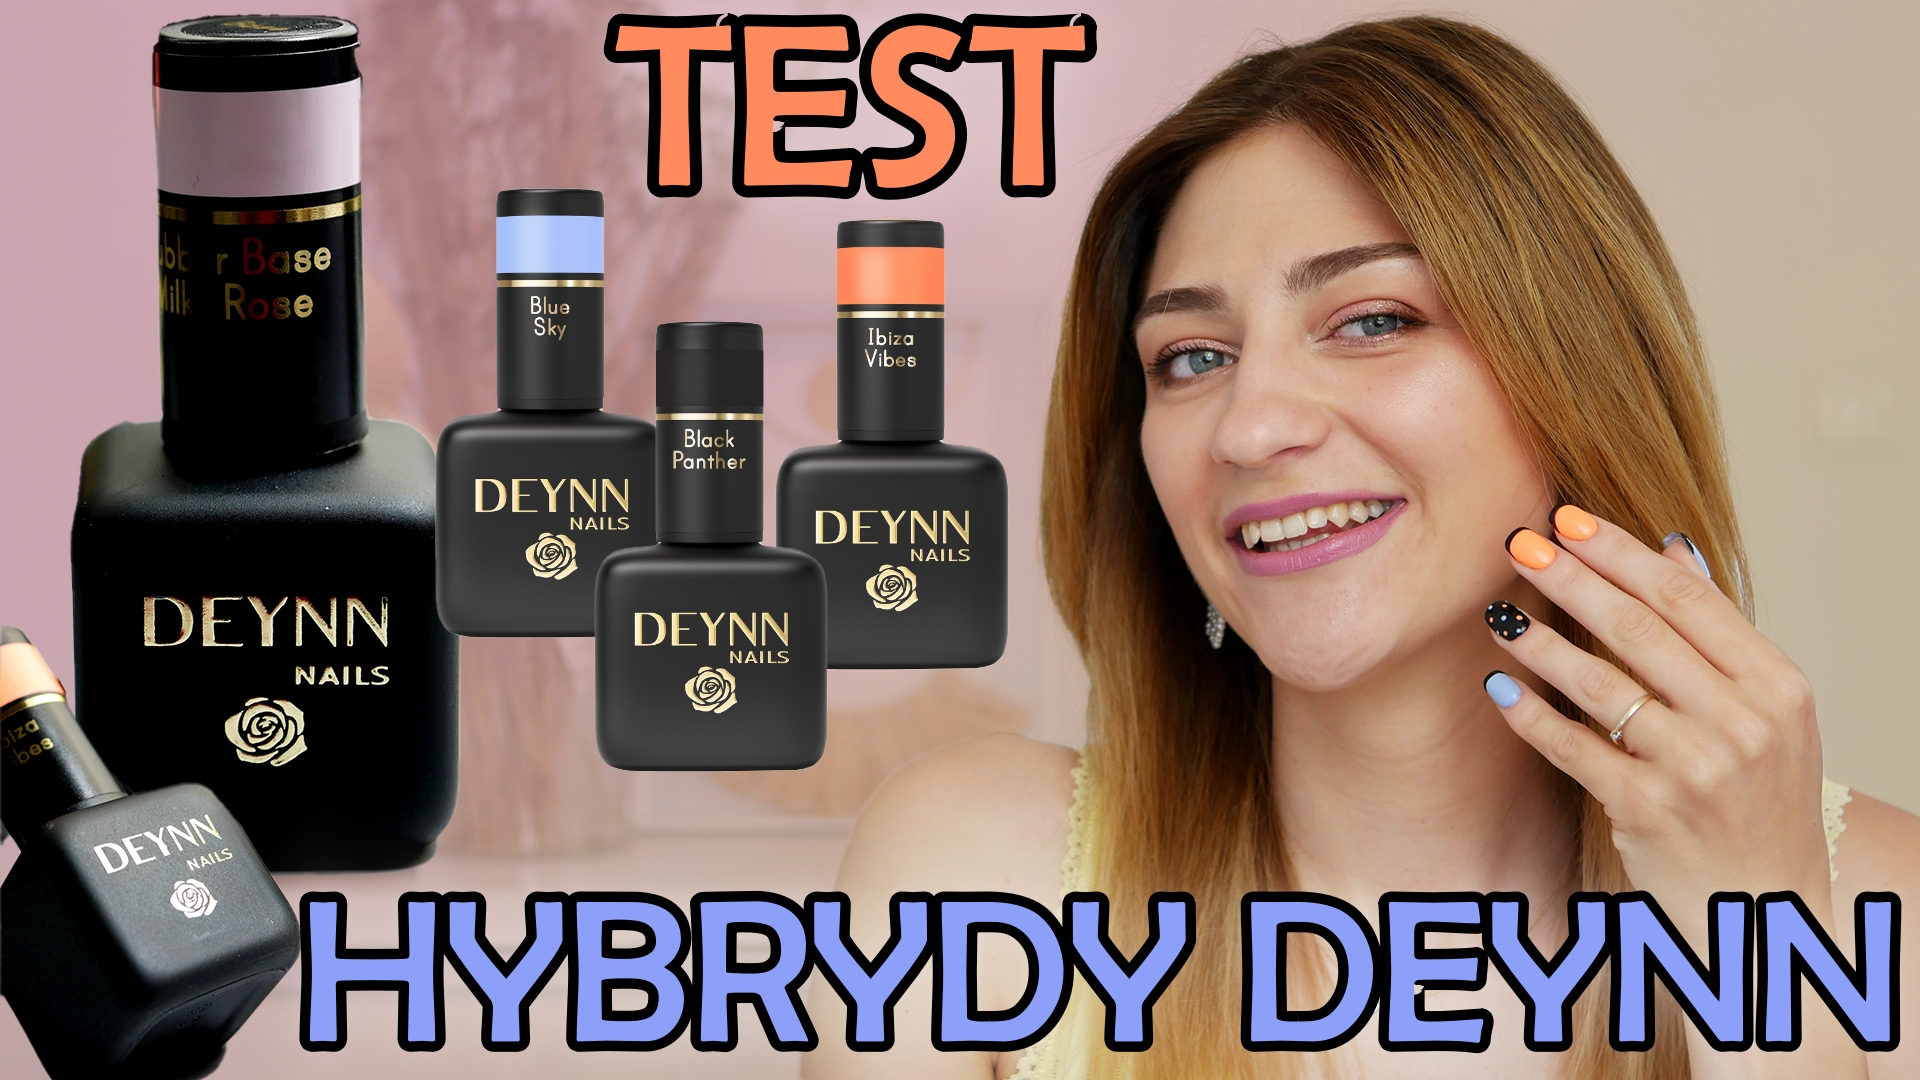 Test lakiery DEYNN NAILS - recenzja hybrydy Deynn - opinia